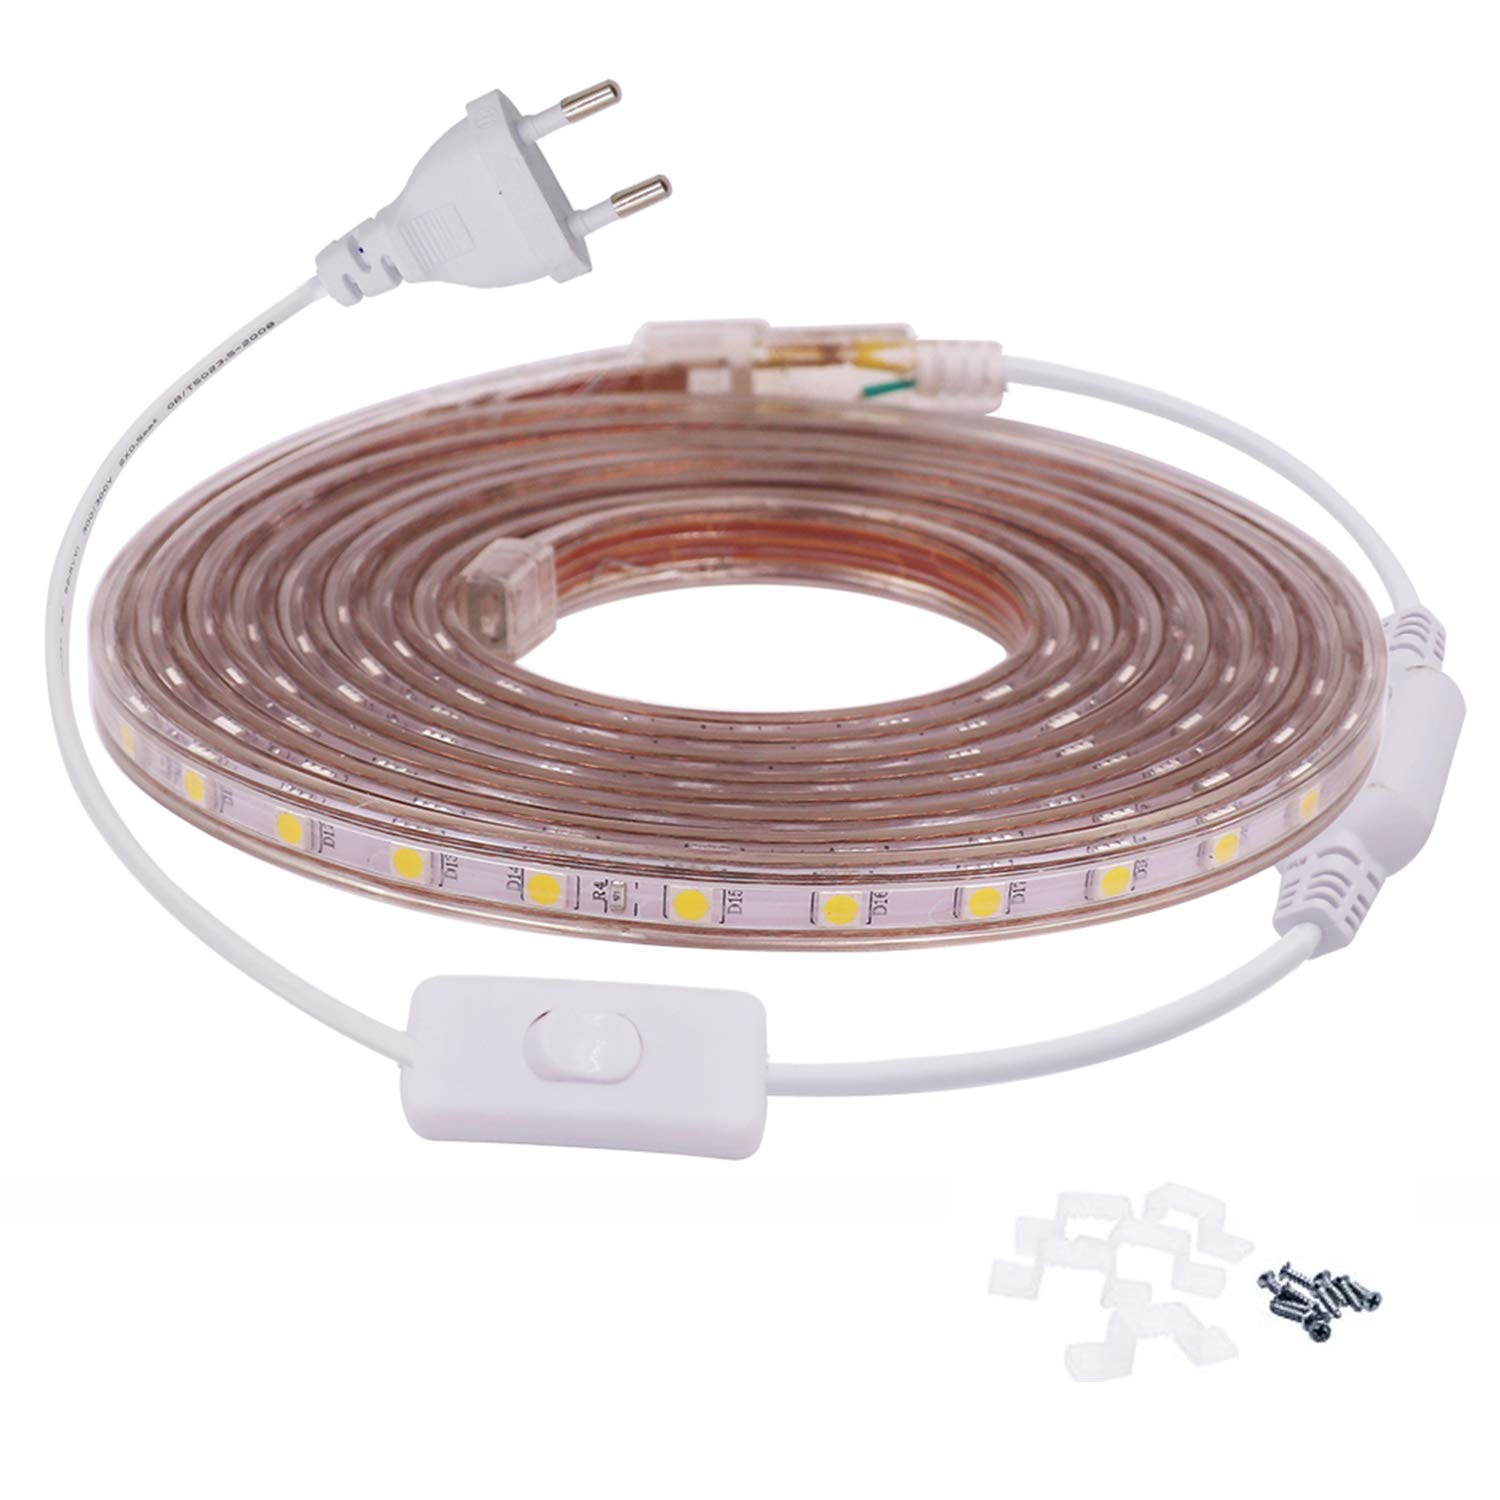 FOLGEMIR 15m Warmweiß LED Band mit Schalter, 220V 230V Lichtleiste, 60 Leds/m Strip, IP65 Lichtschlauch, milde Hintergrundbeleuchtung